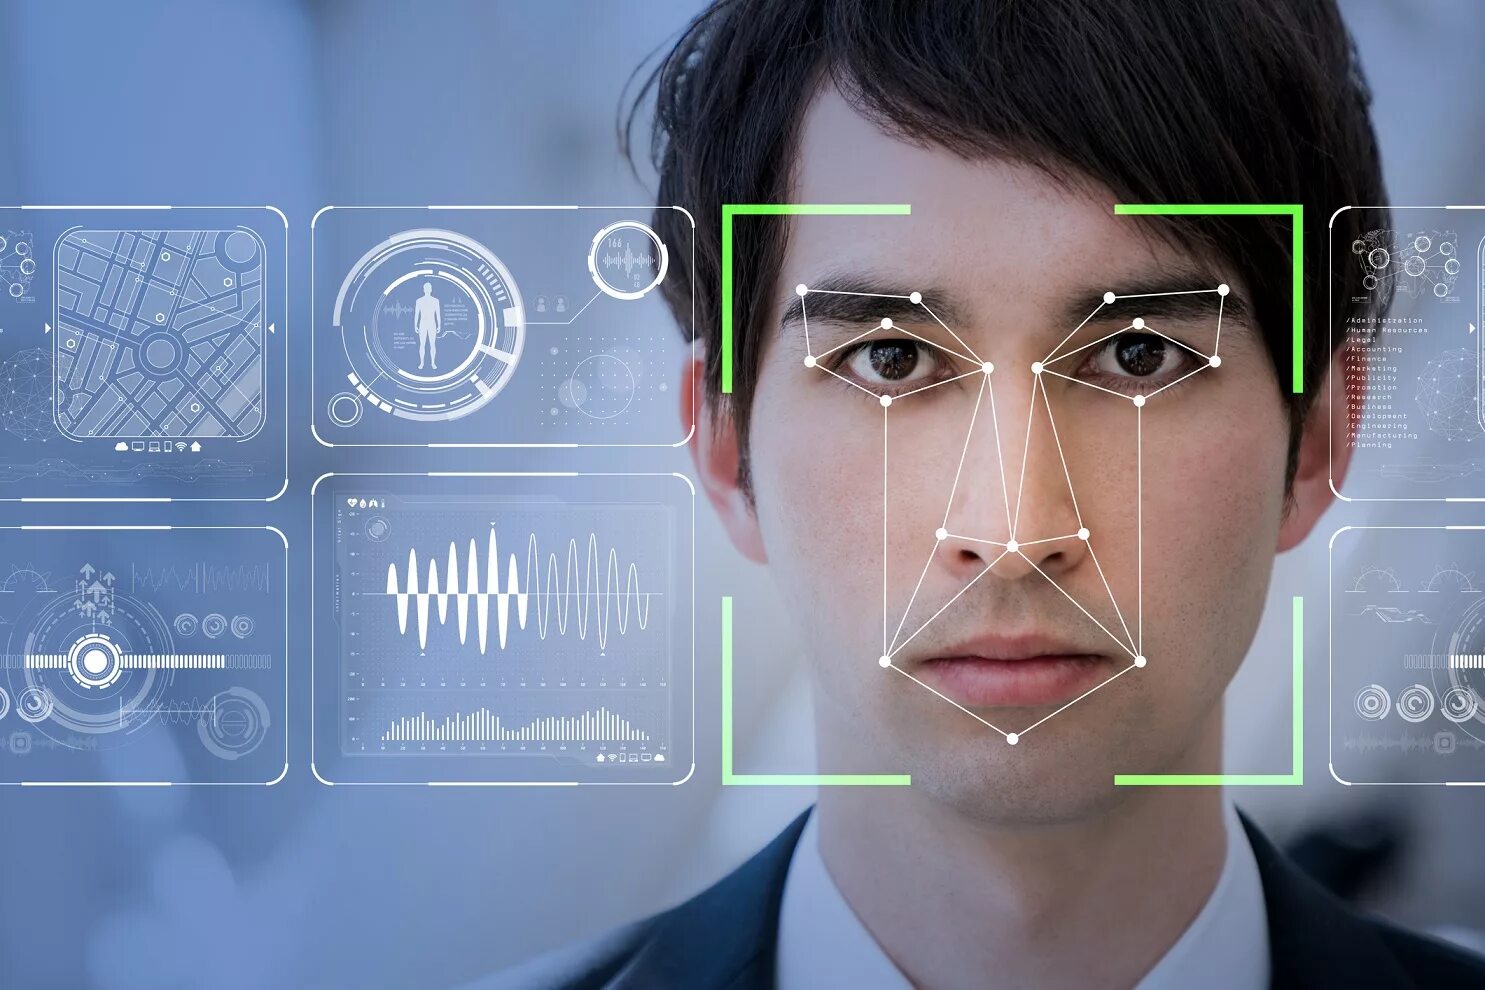 Ответы с помощью ии. Технология распознавания лиц. Распознавание лиц и идентификация. Биометрия лица. Компьютерное зрение распознавание лиц.